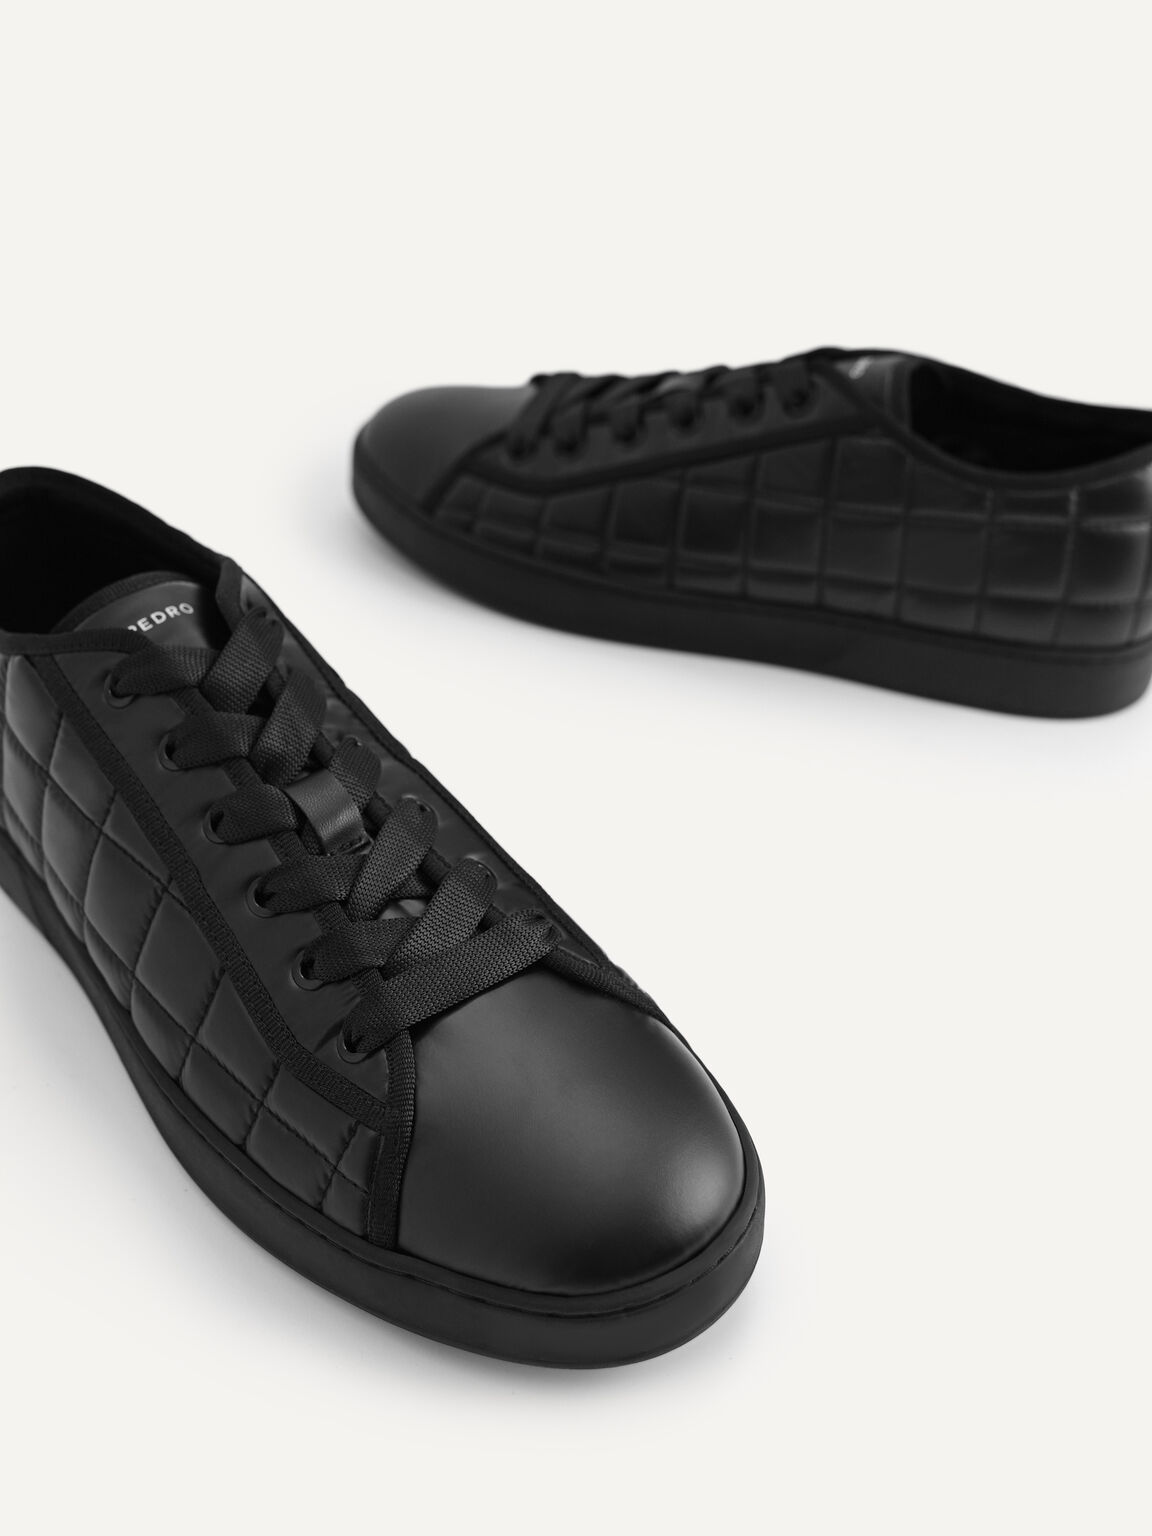 絎縫休閒運動鞋, 黑色